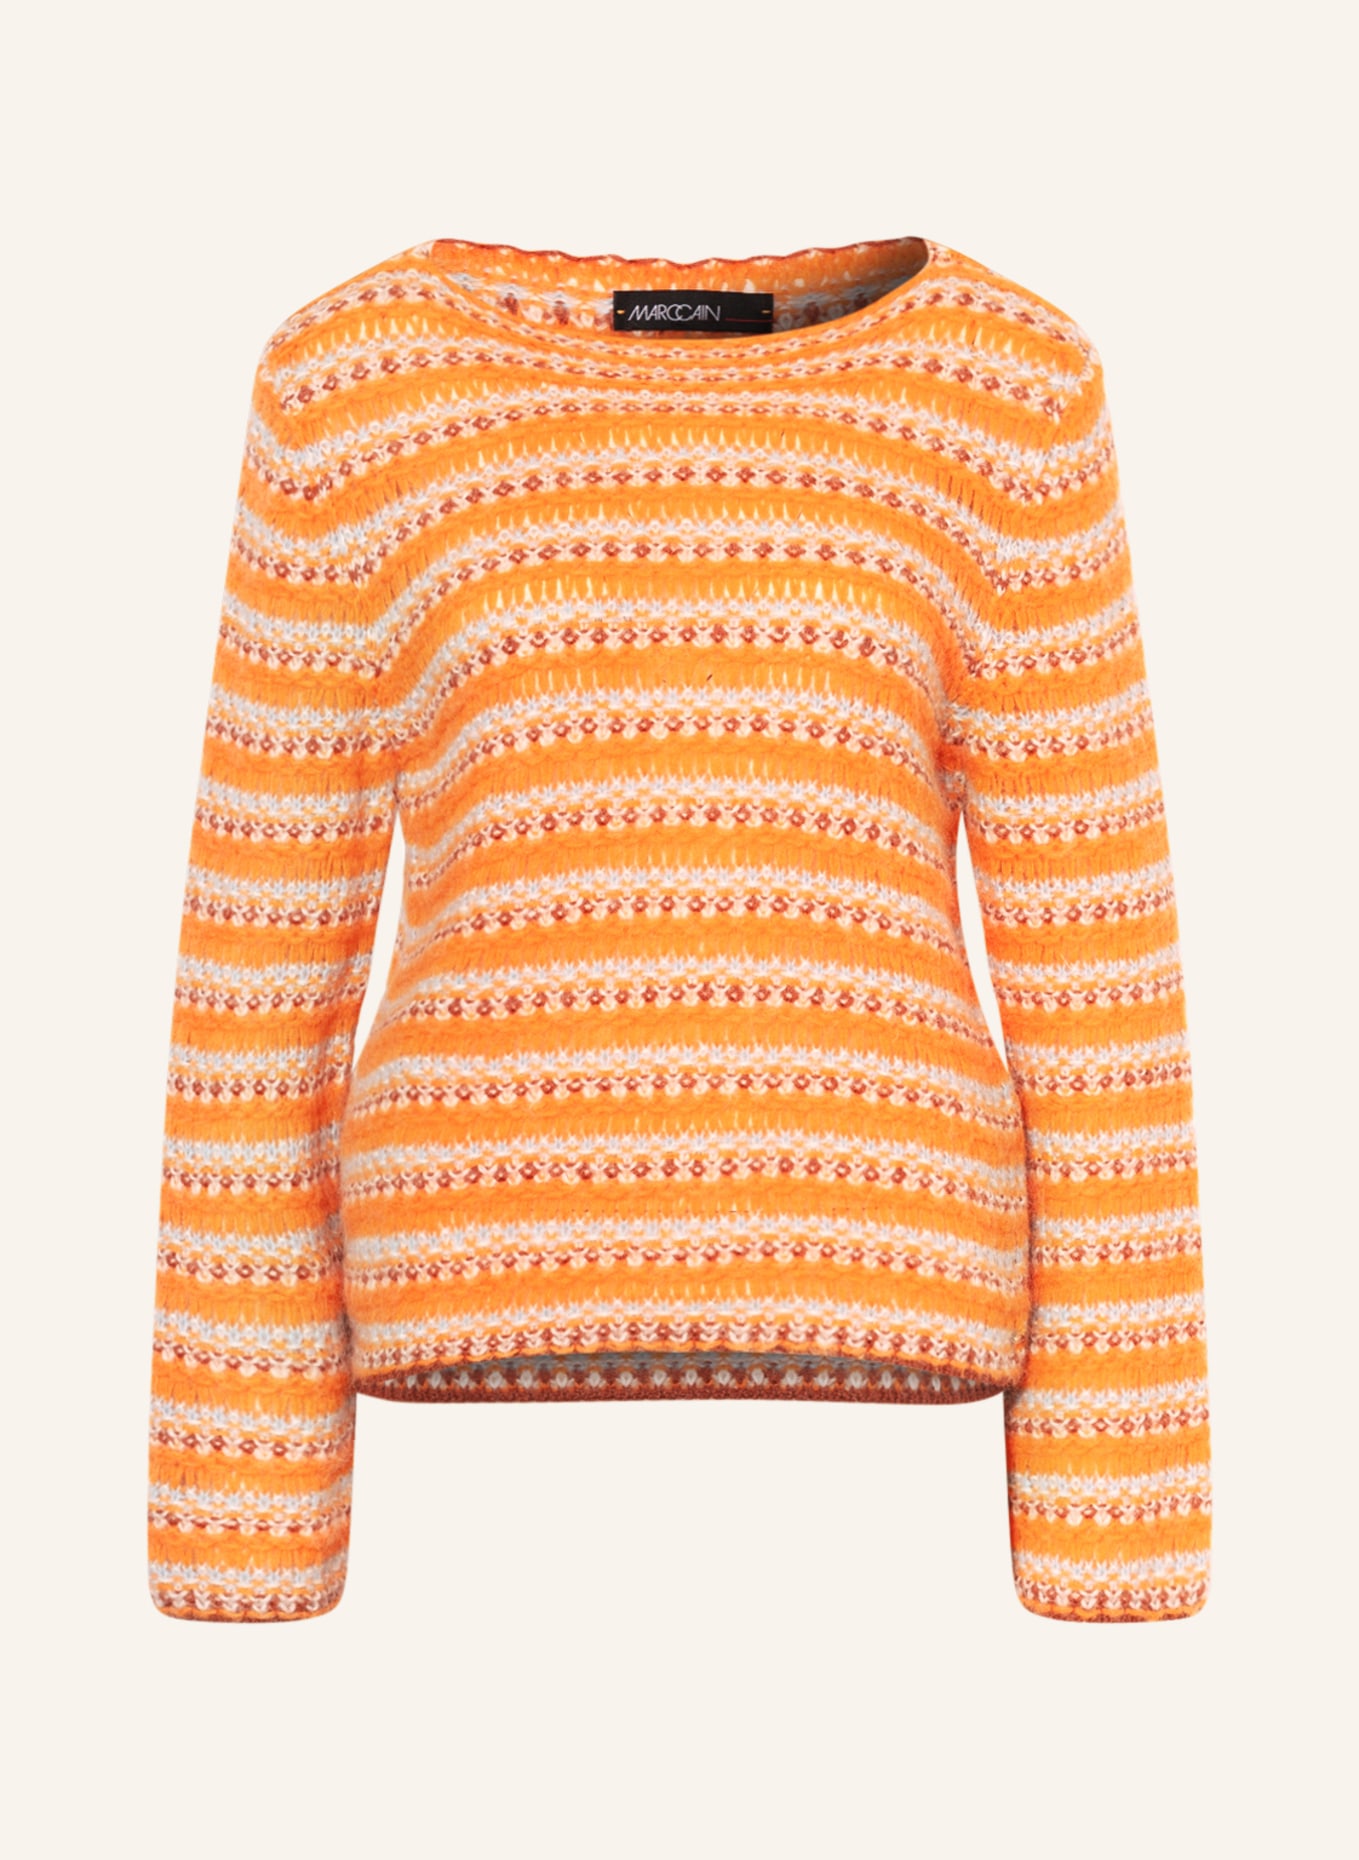 MARC CAIN Pullover, Farbe: 474 clear orange (Bild 1)